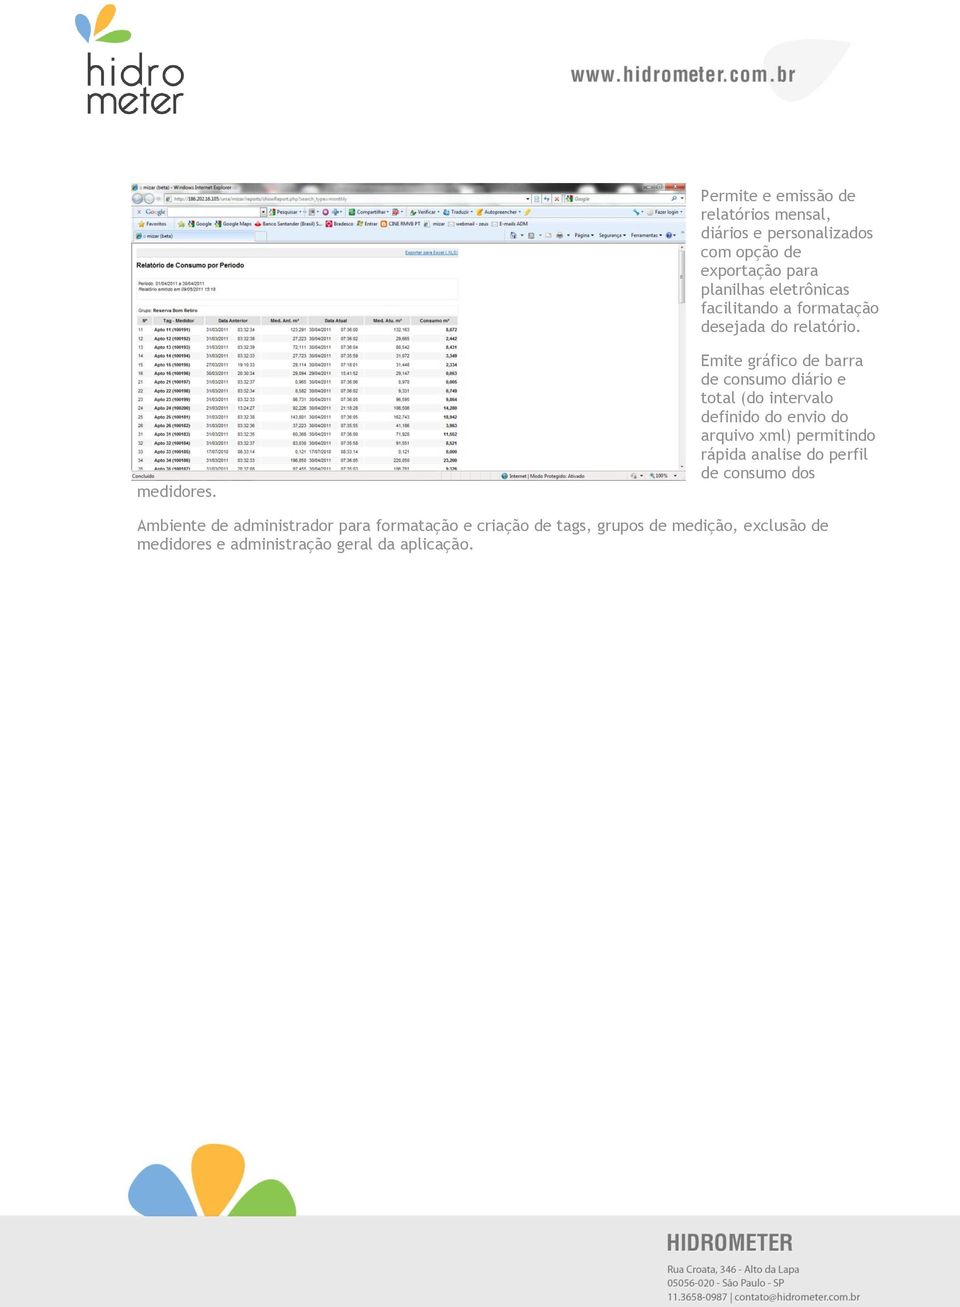 Emite gráfico de barra de consumo diário e total (do intervalo definido do envio do arquivo xml) permitindo rápida